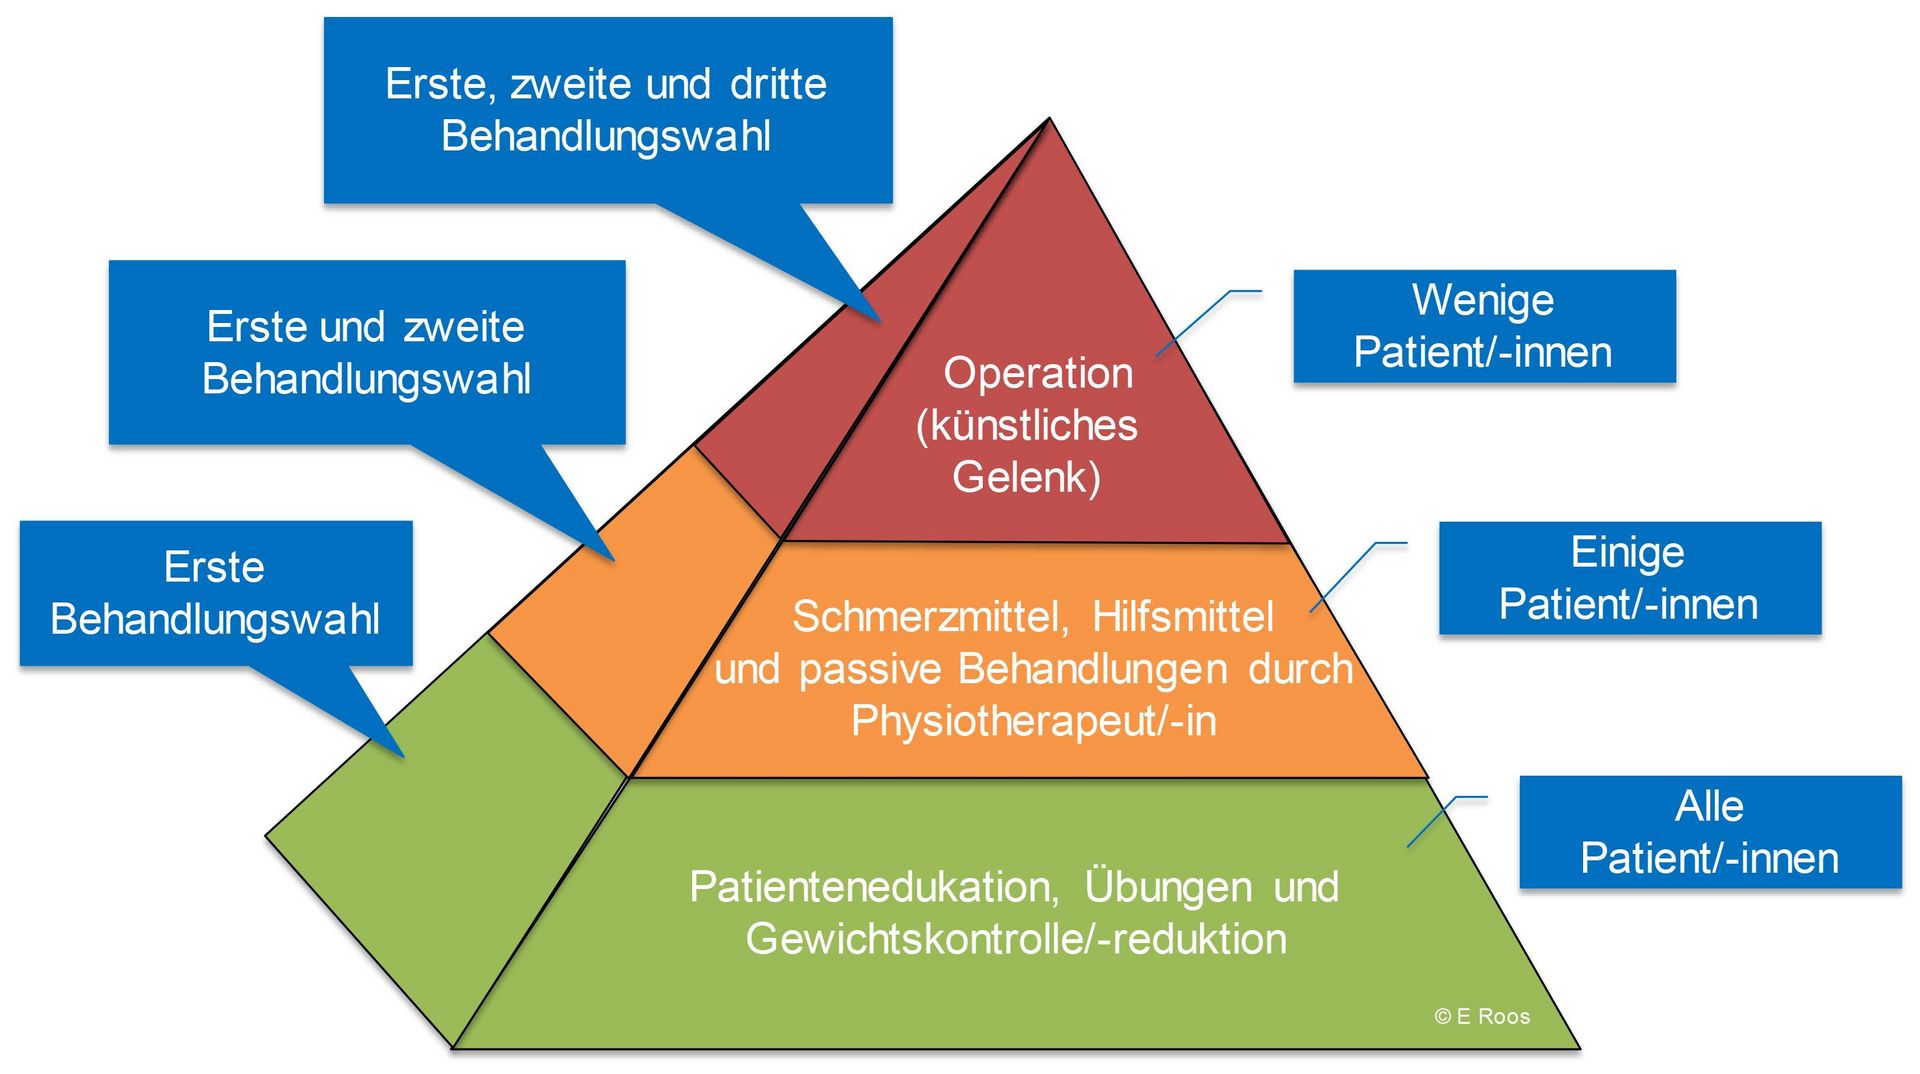 [Translate to Englisch:] Infografik: Auflistung verschiedener Behandlungen in Pyramidenform.